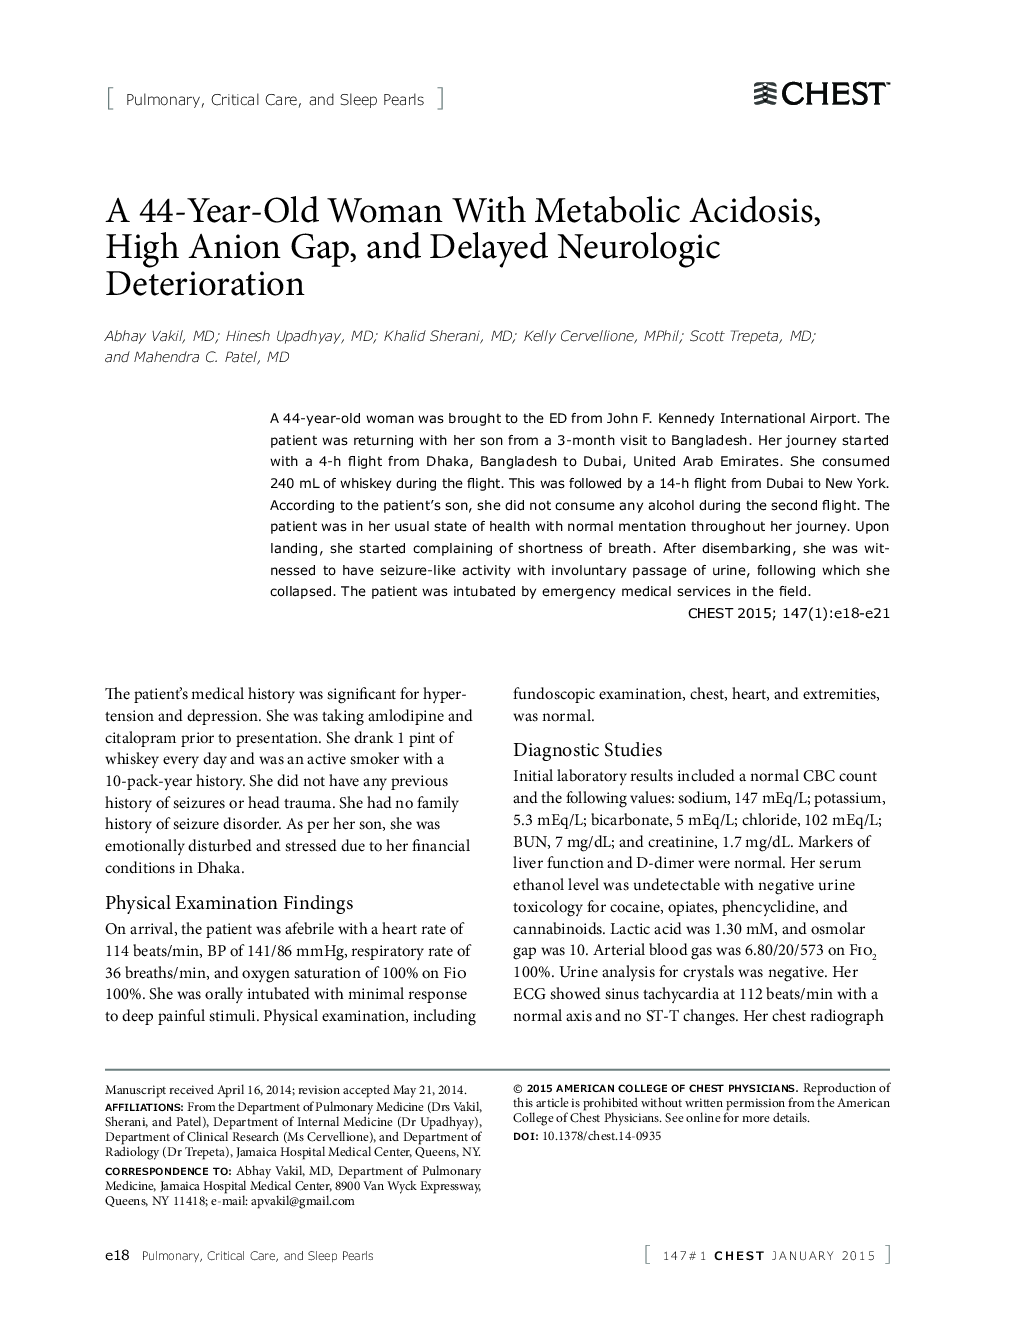 یک زن 44 ساله مبتلا به اسیدوز متابولیک، گلودرد آنیون بالا و تضعیف نورولوژیک تاخیر 